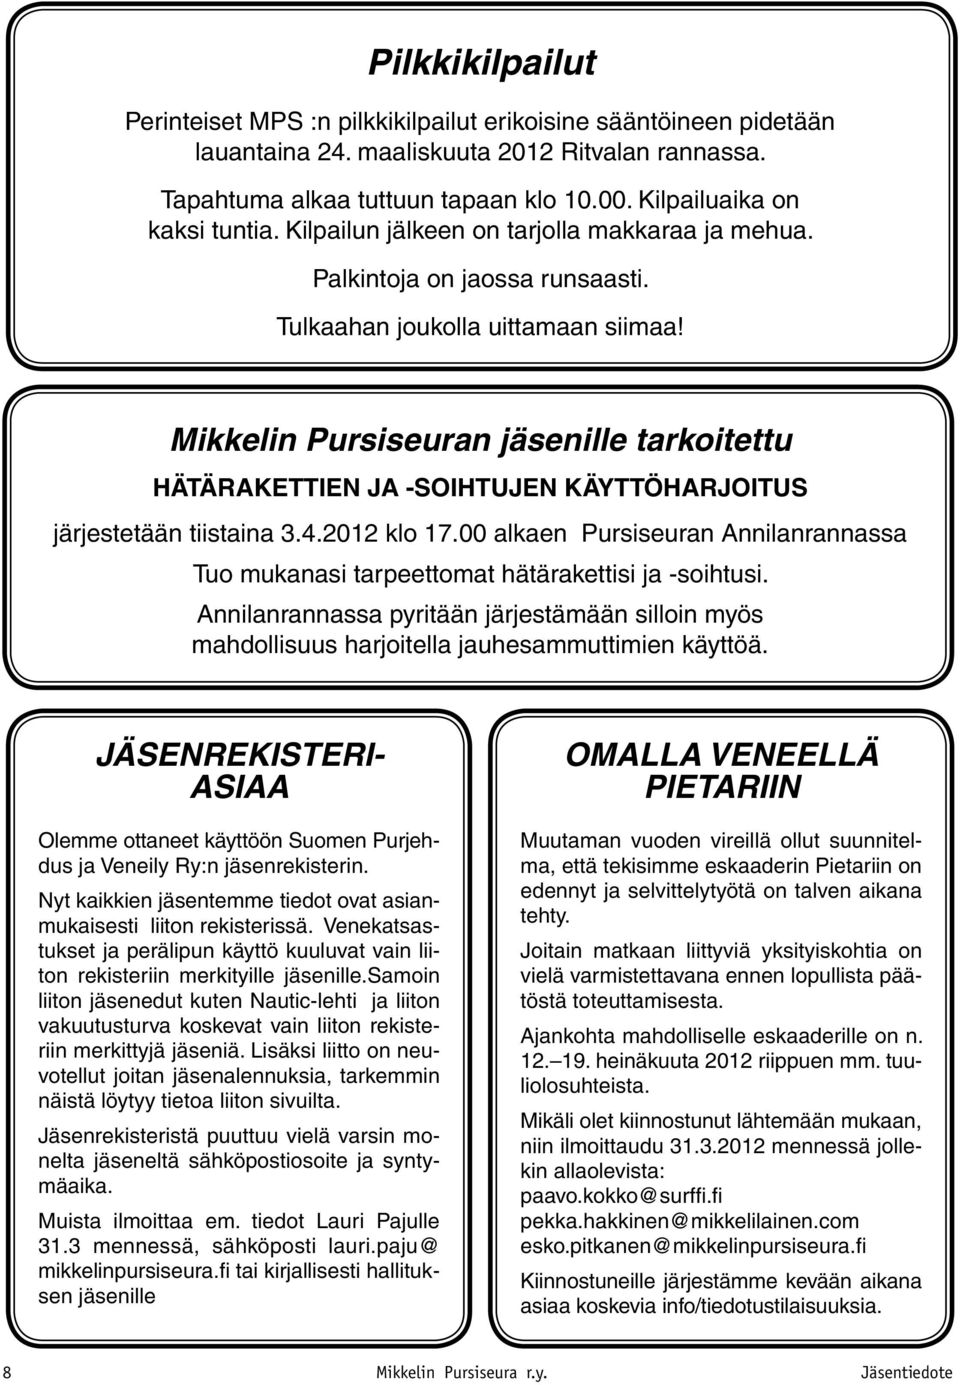 Mikkelin Pursiseuran jäsenille tarkoitettu HÄTÄRAKETTIEN JA -SOIHTUJEN KÄYTTÖHARJOITUS järjestetään tiistaina 3.4.2012 klo 17.